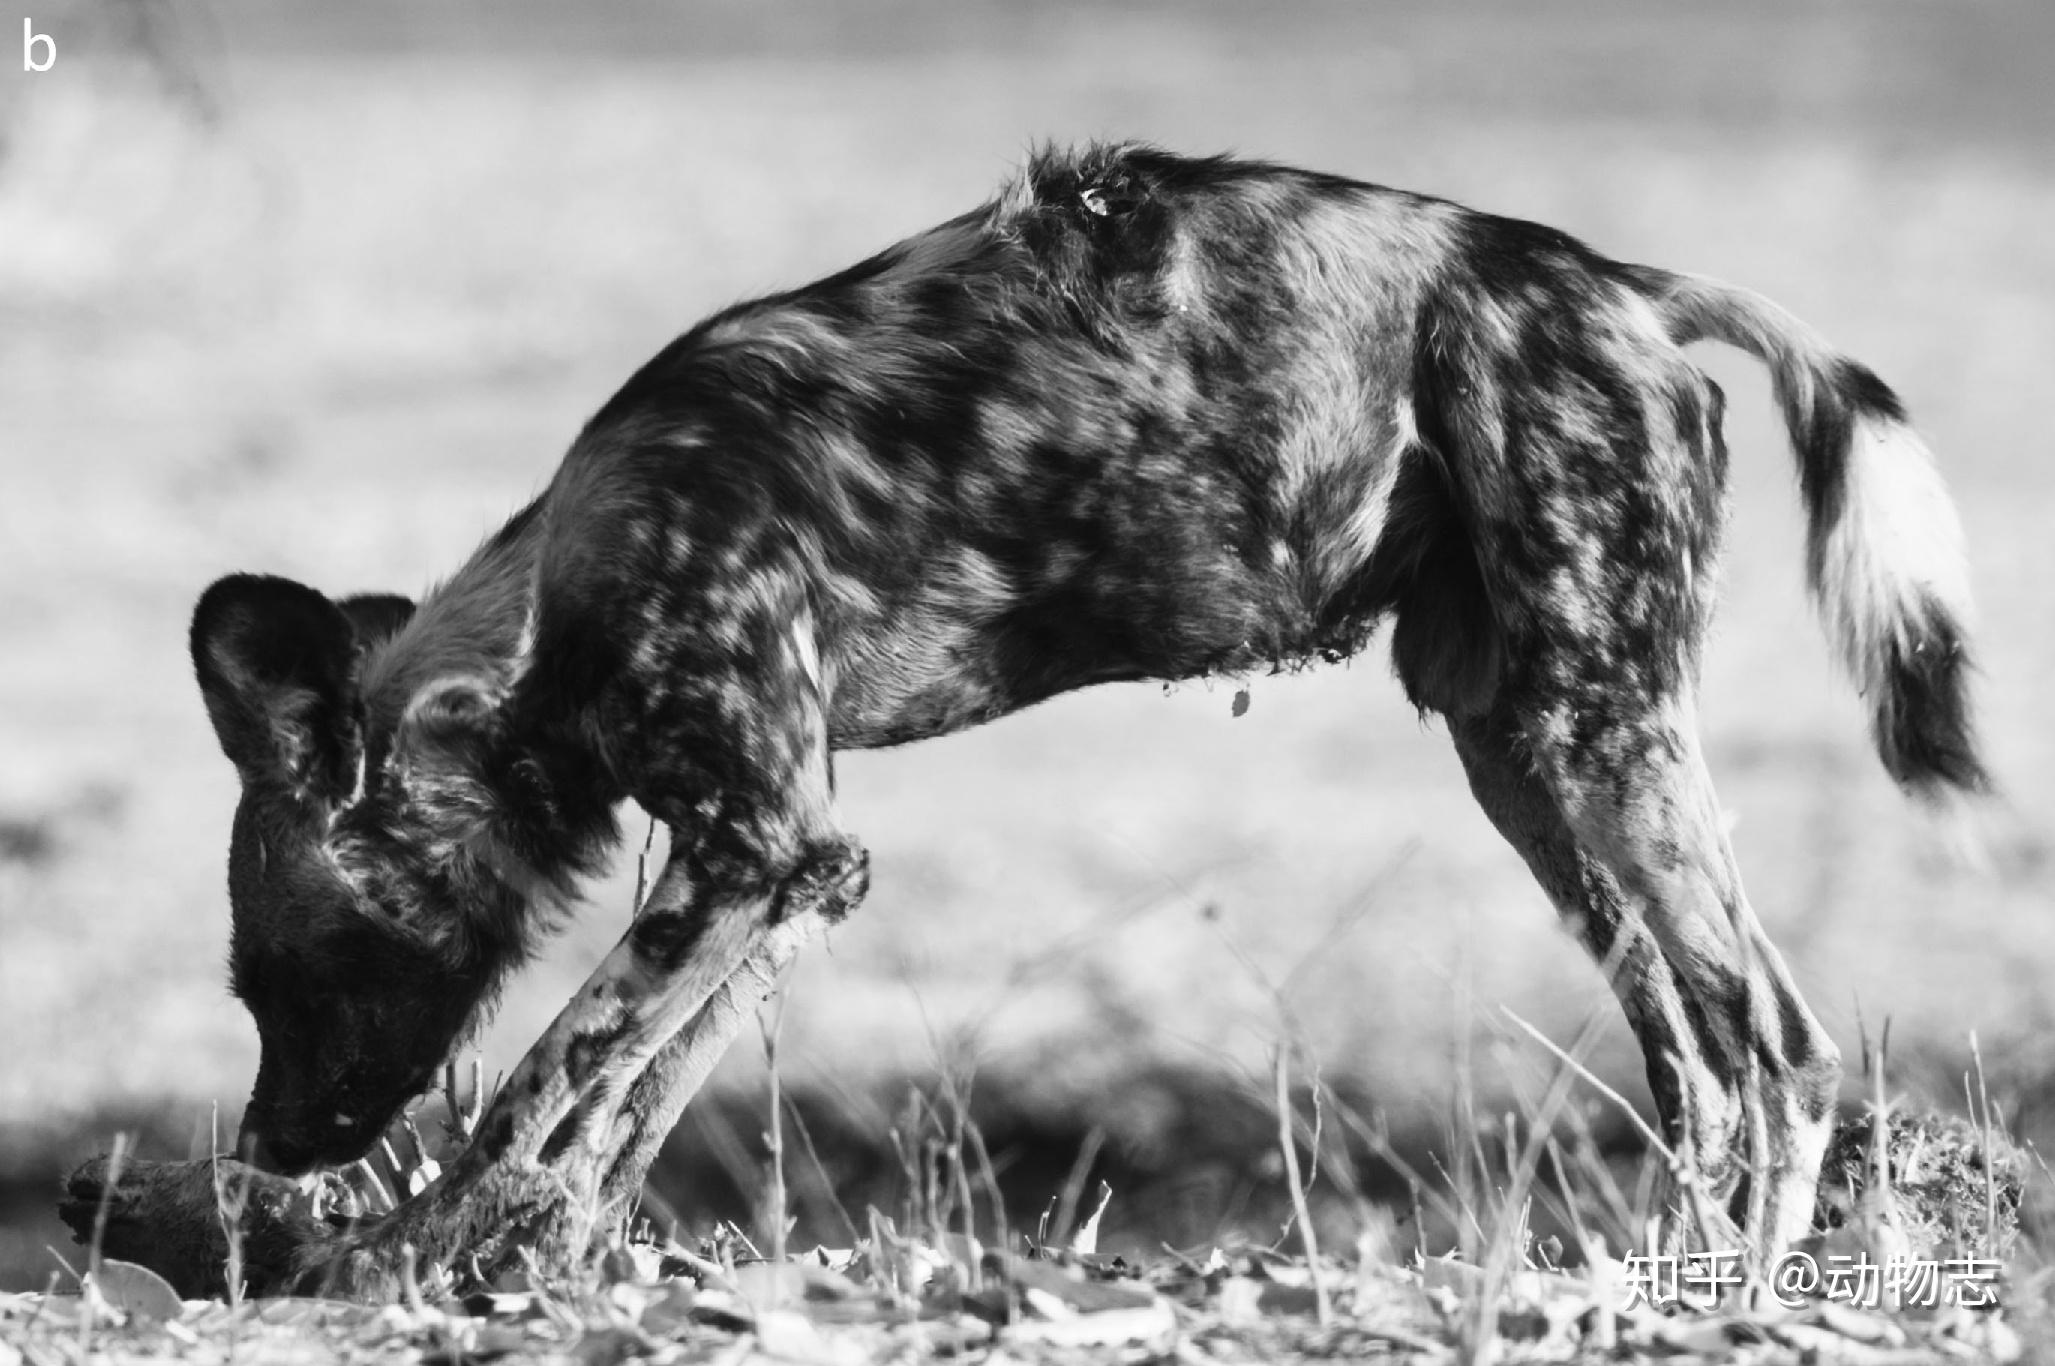 非洲野狗 库存图片. 图片 包括有 狩猎, 五颜六色, 有洞察力, 居住, 敏锐, 本质, 哺乳动物, 母狗 - 156958417